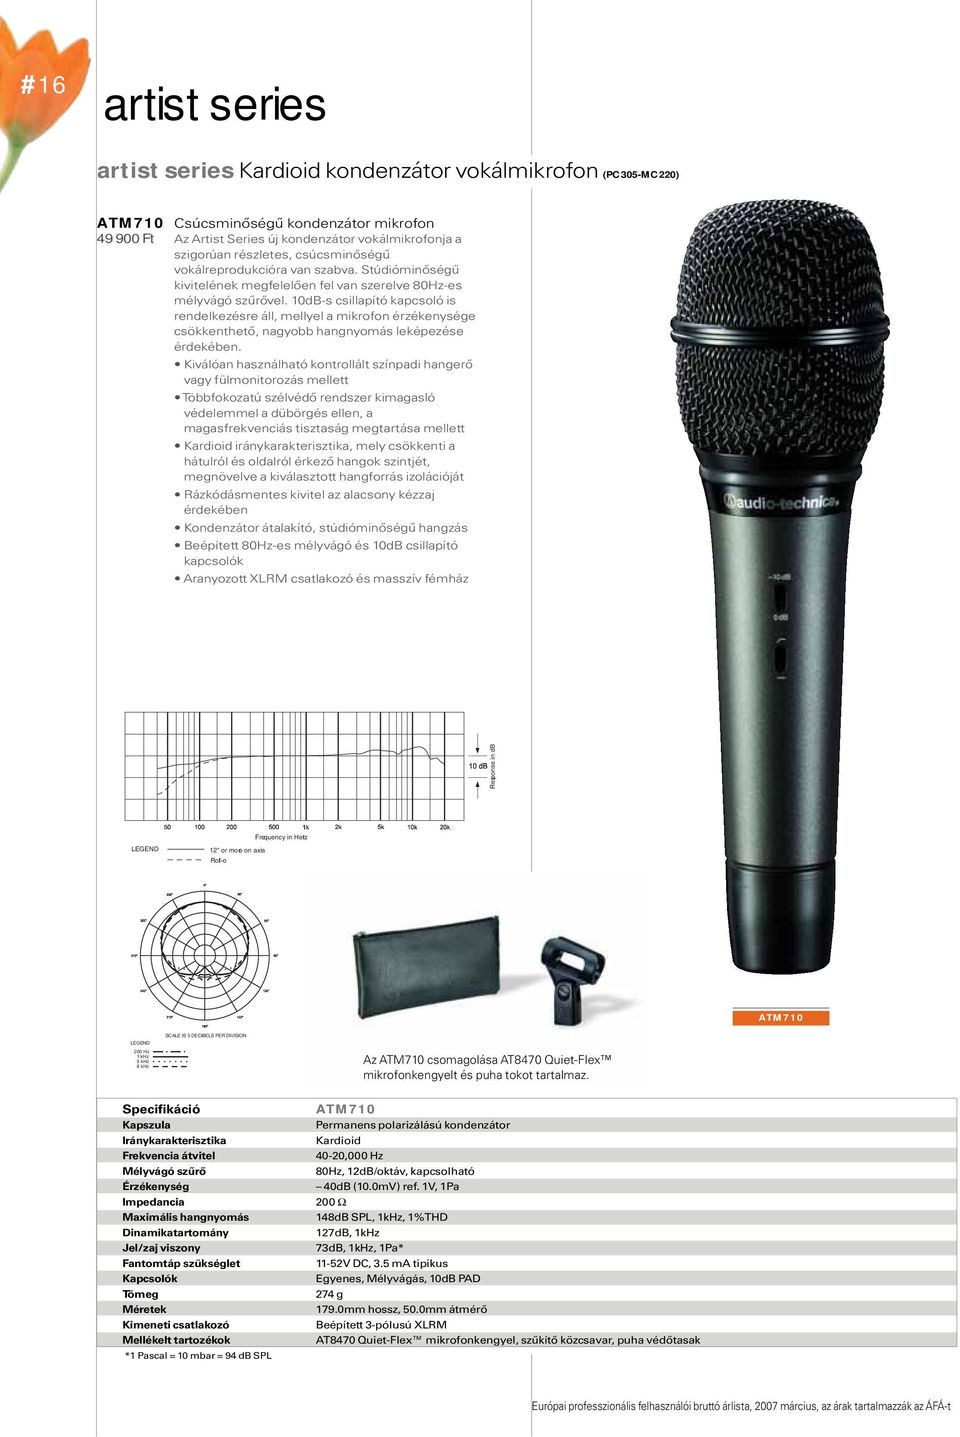 10dB-s csillapító kapcsoló is rendelkezésre áll, mellyel a mikrofon érzékenysége csökkenthető, nagyobb hangnyomás leképezése érdekében.